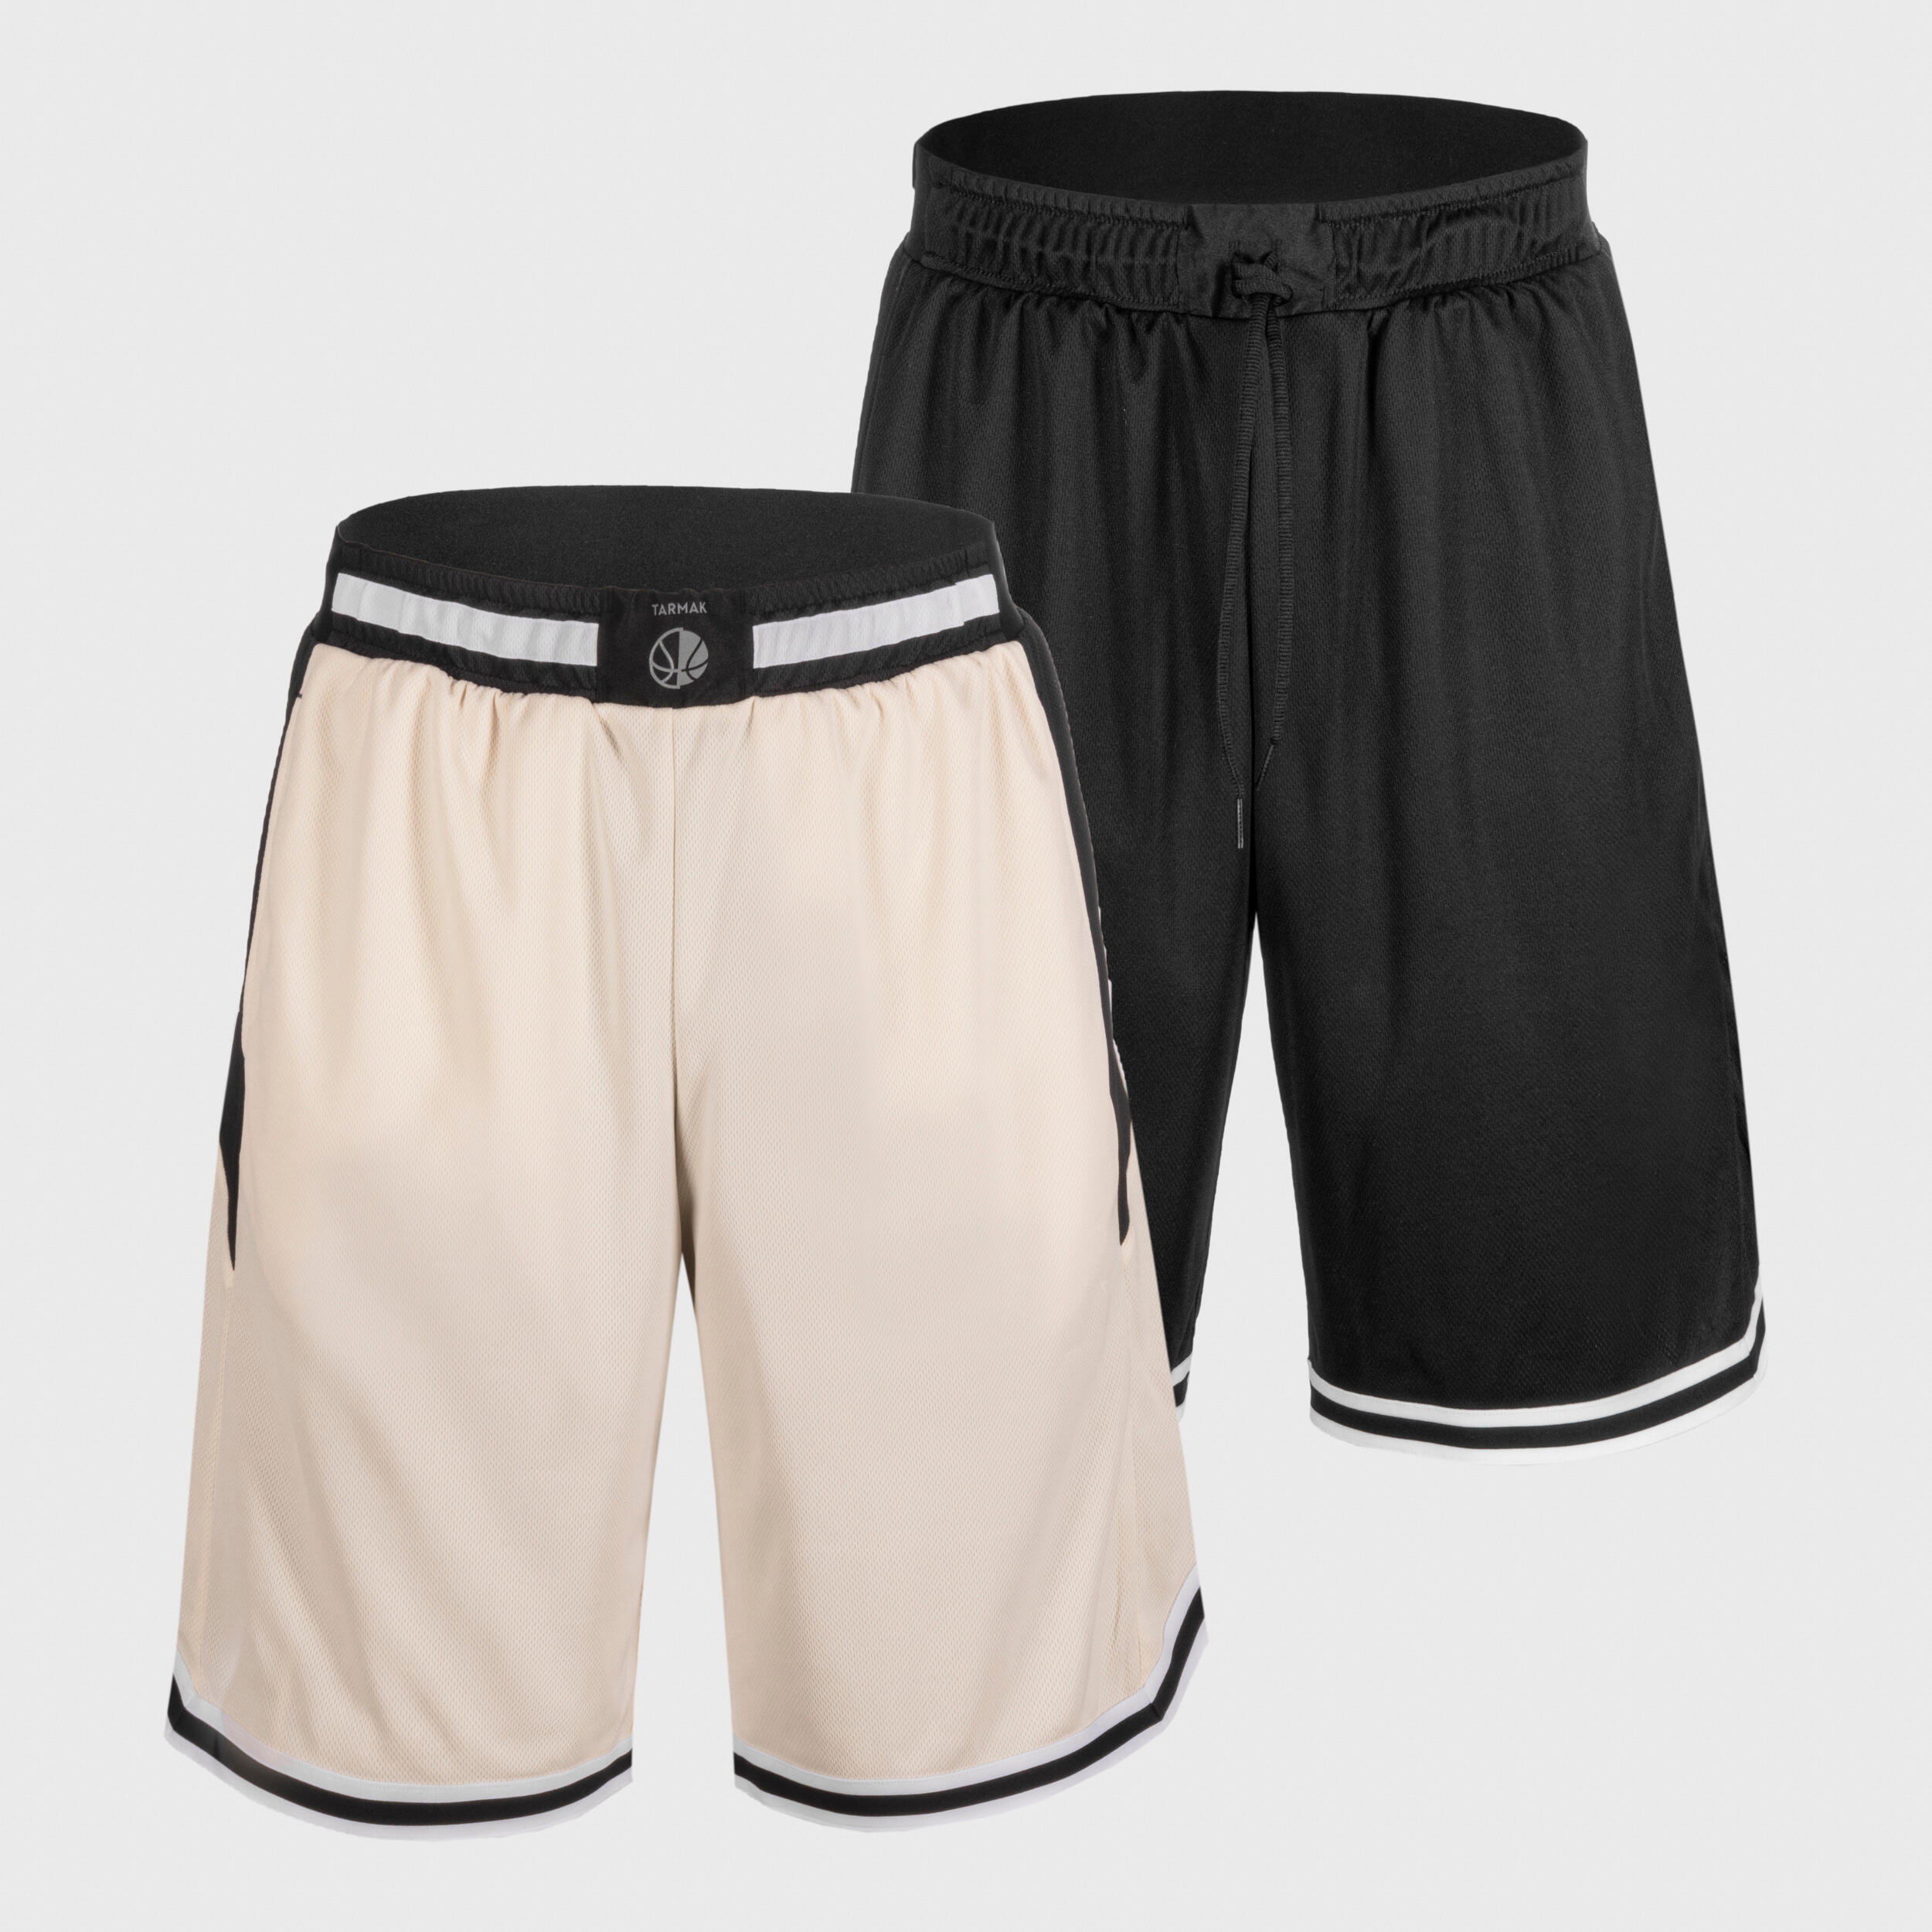 Men's/Women's Reversible Basketball Shorts SH500R - Beige/Black 2/10